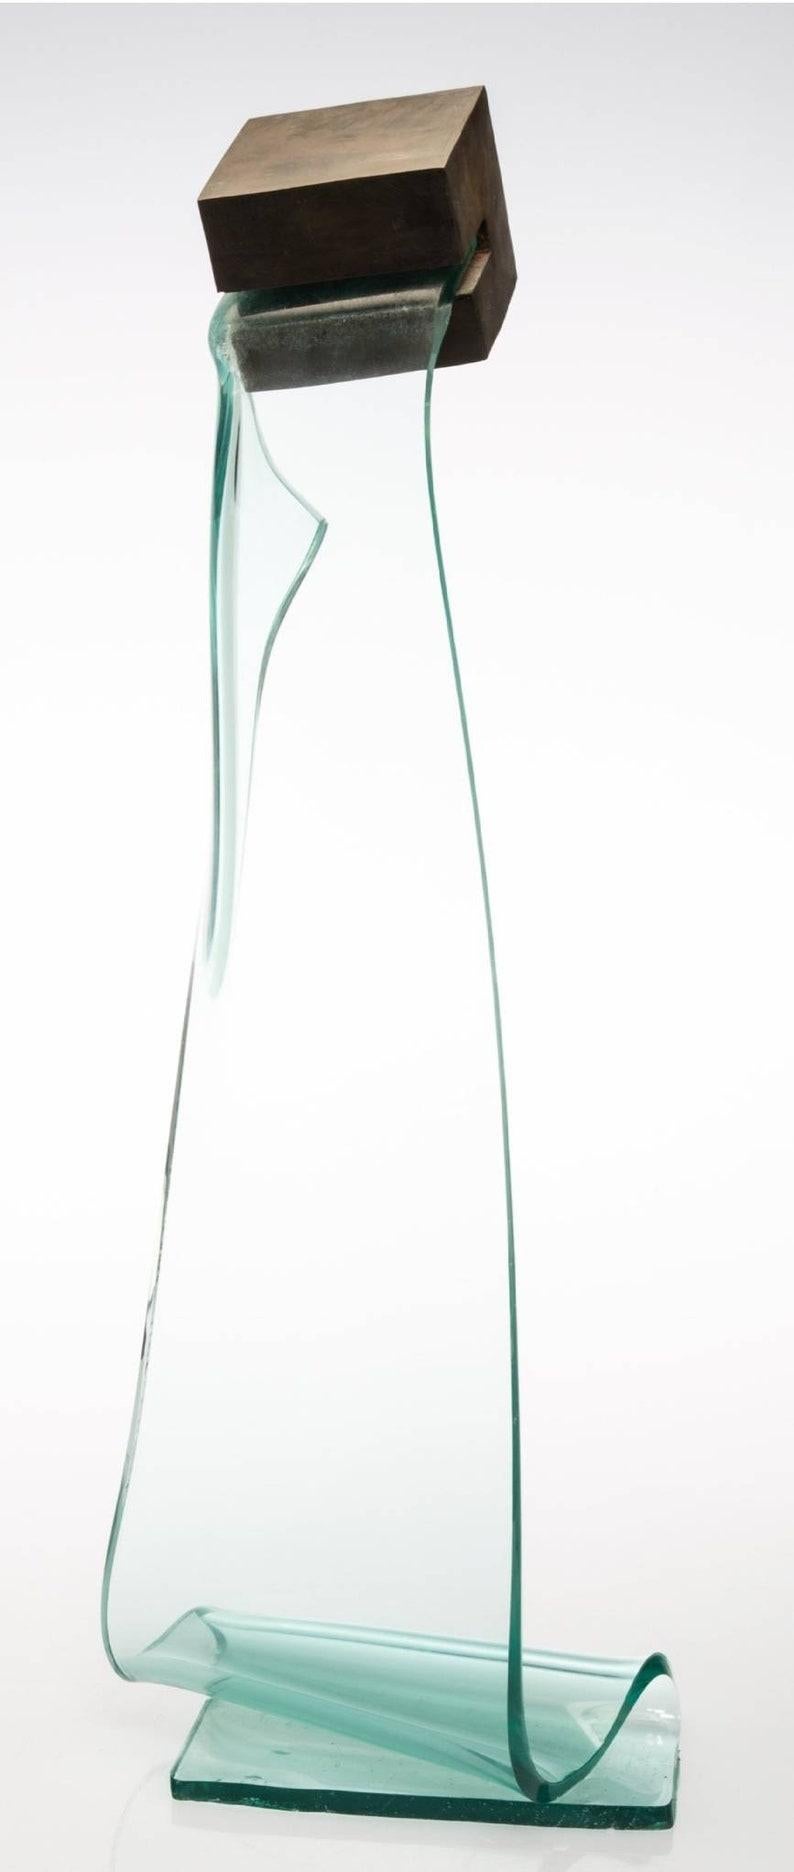 Rare et spectaculaire sculpture autoportante américaine postmoderniste en verre moulé et en bronze de Mary Shaffer (États-Unis, née en 1947), Cube #9, vers 1991.  

MATERIAL : Verre, bronze
Tall / Large floor standing

Dimensions :
33